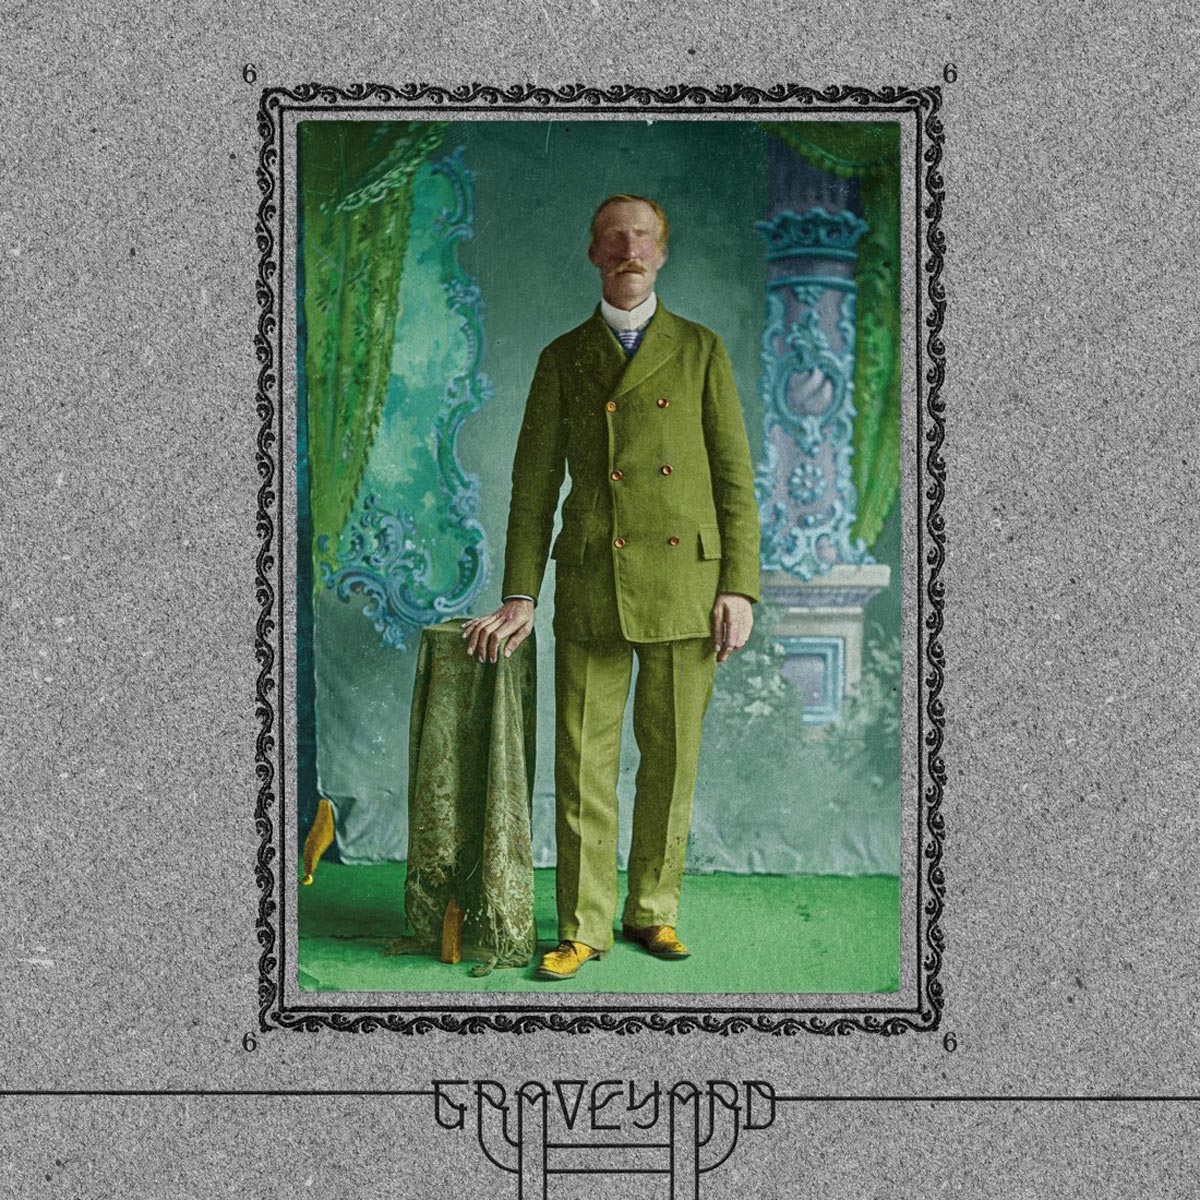 Graveyard - 6 (Indie Exclusive Blue Vinyl) - LP